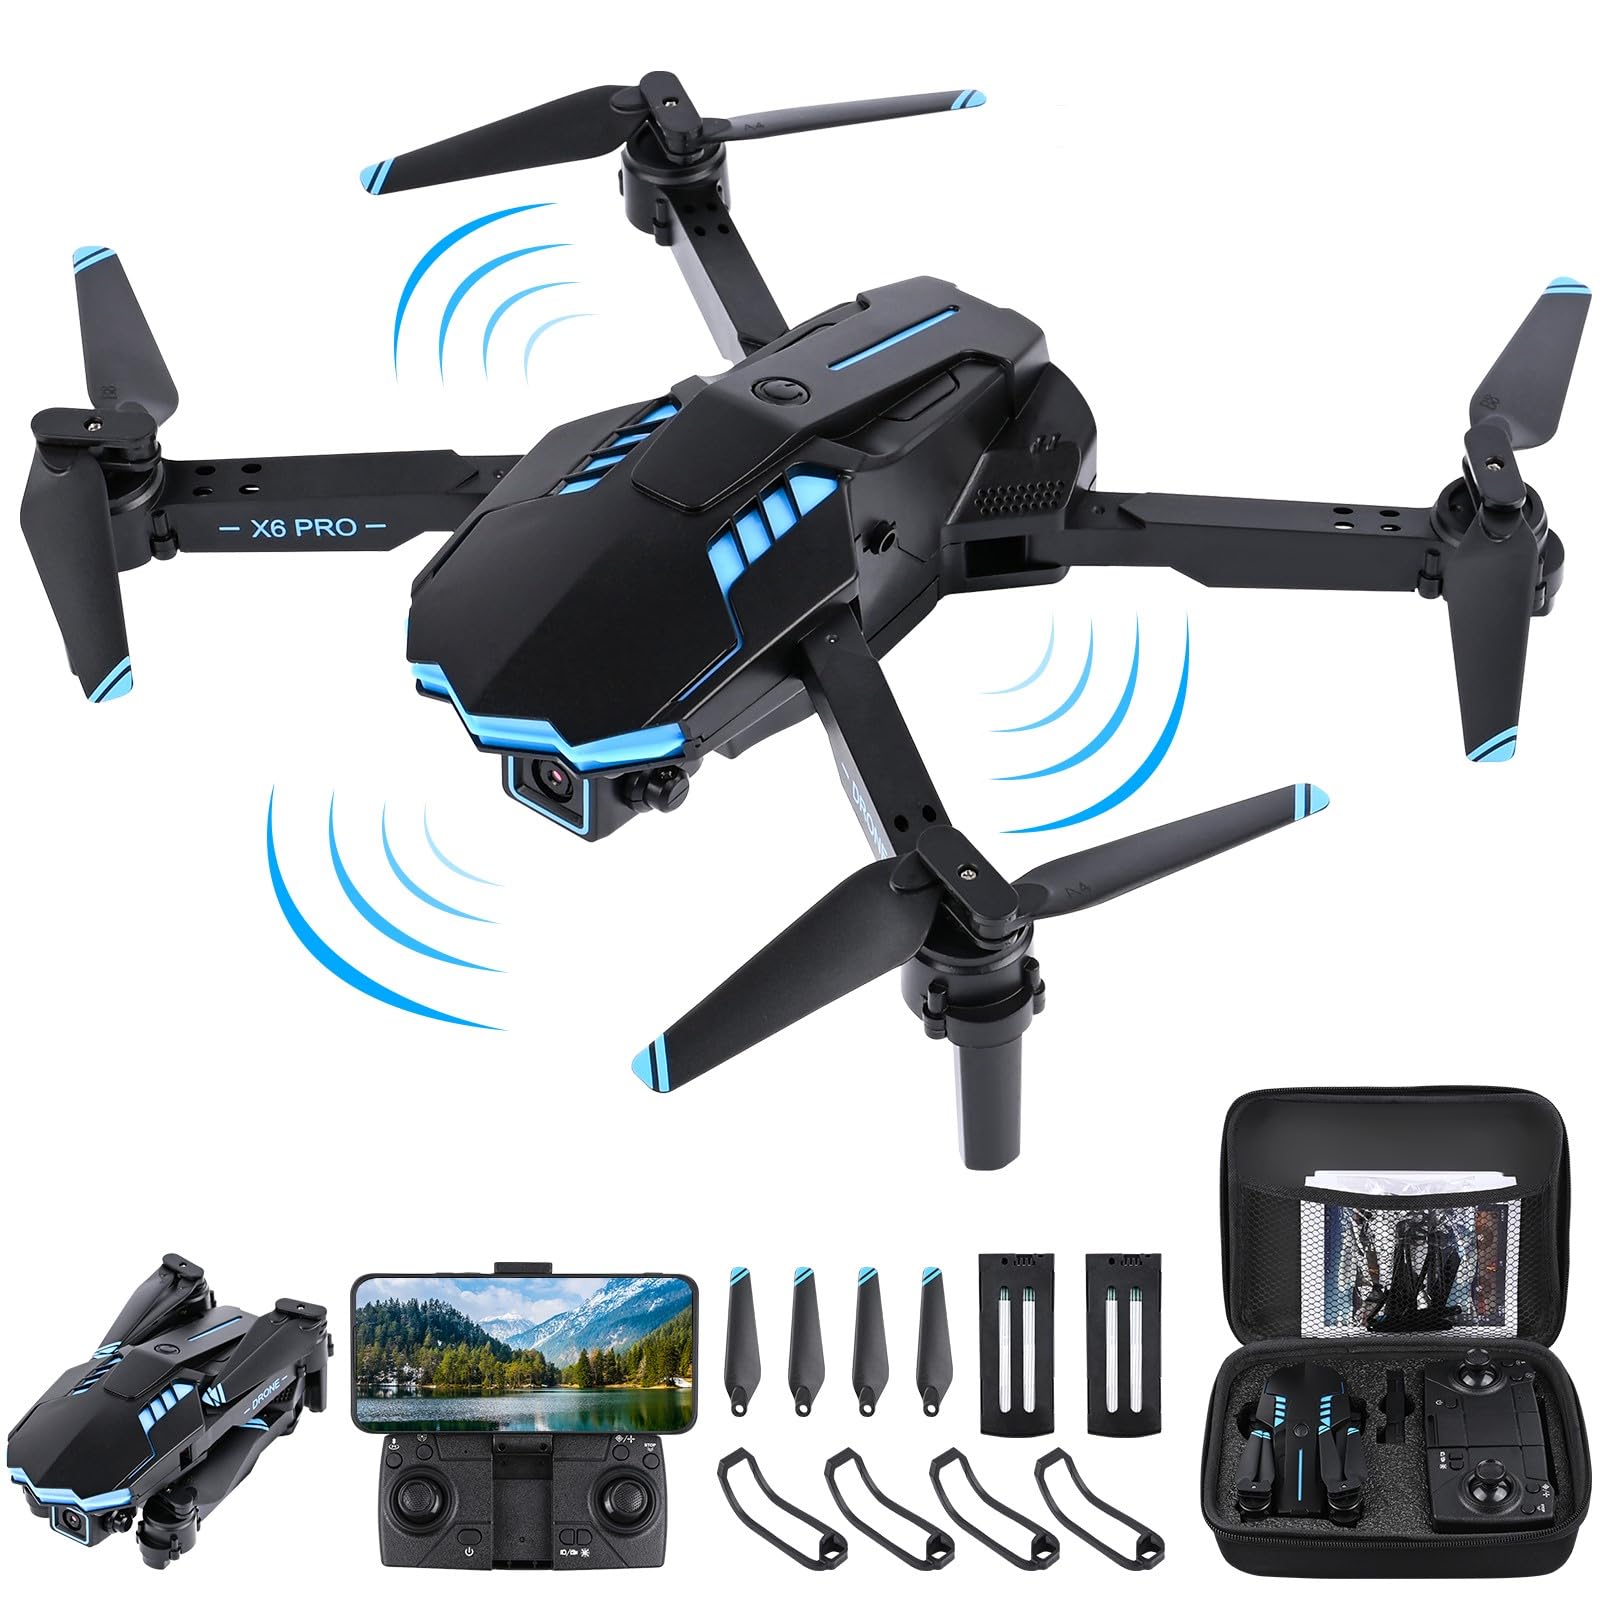 Weinsamkeit Drohne mit Kamera 1080P HD für Kinder, WiFi FPV Drone für Anfänger, RC Quadcopter mit 2 Akku, Schwerkraft Sensor, 3D Flip Mode, Ein-Tasten-Start/Landung, Höhenhaltemodus, Headless Mode von Weinsamkeit